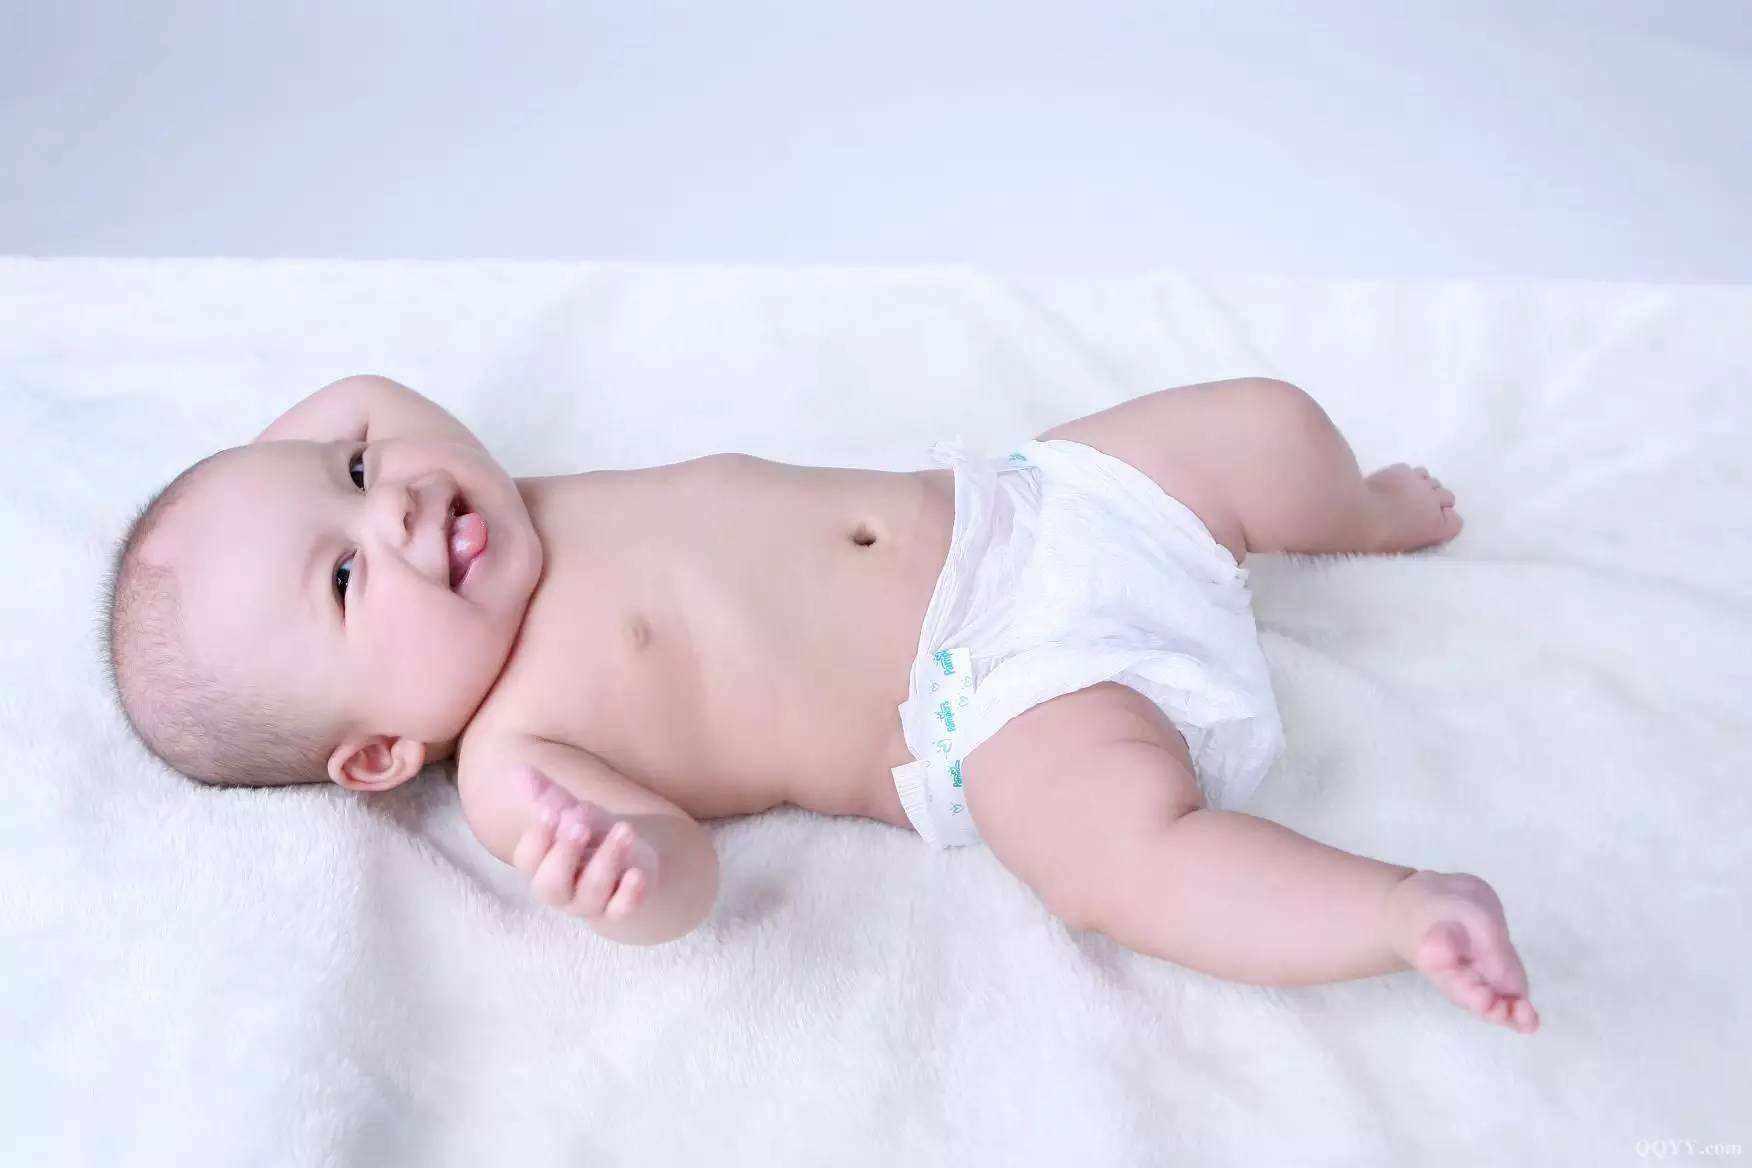 Zdrava beba često mokri, pa su pelene svaka tri sata vlažne - Avaz